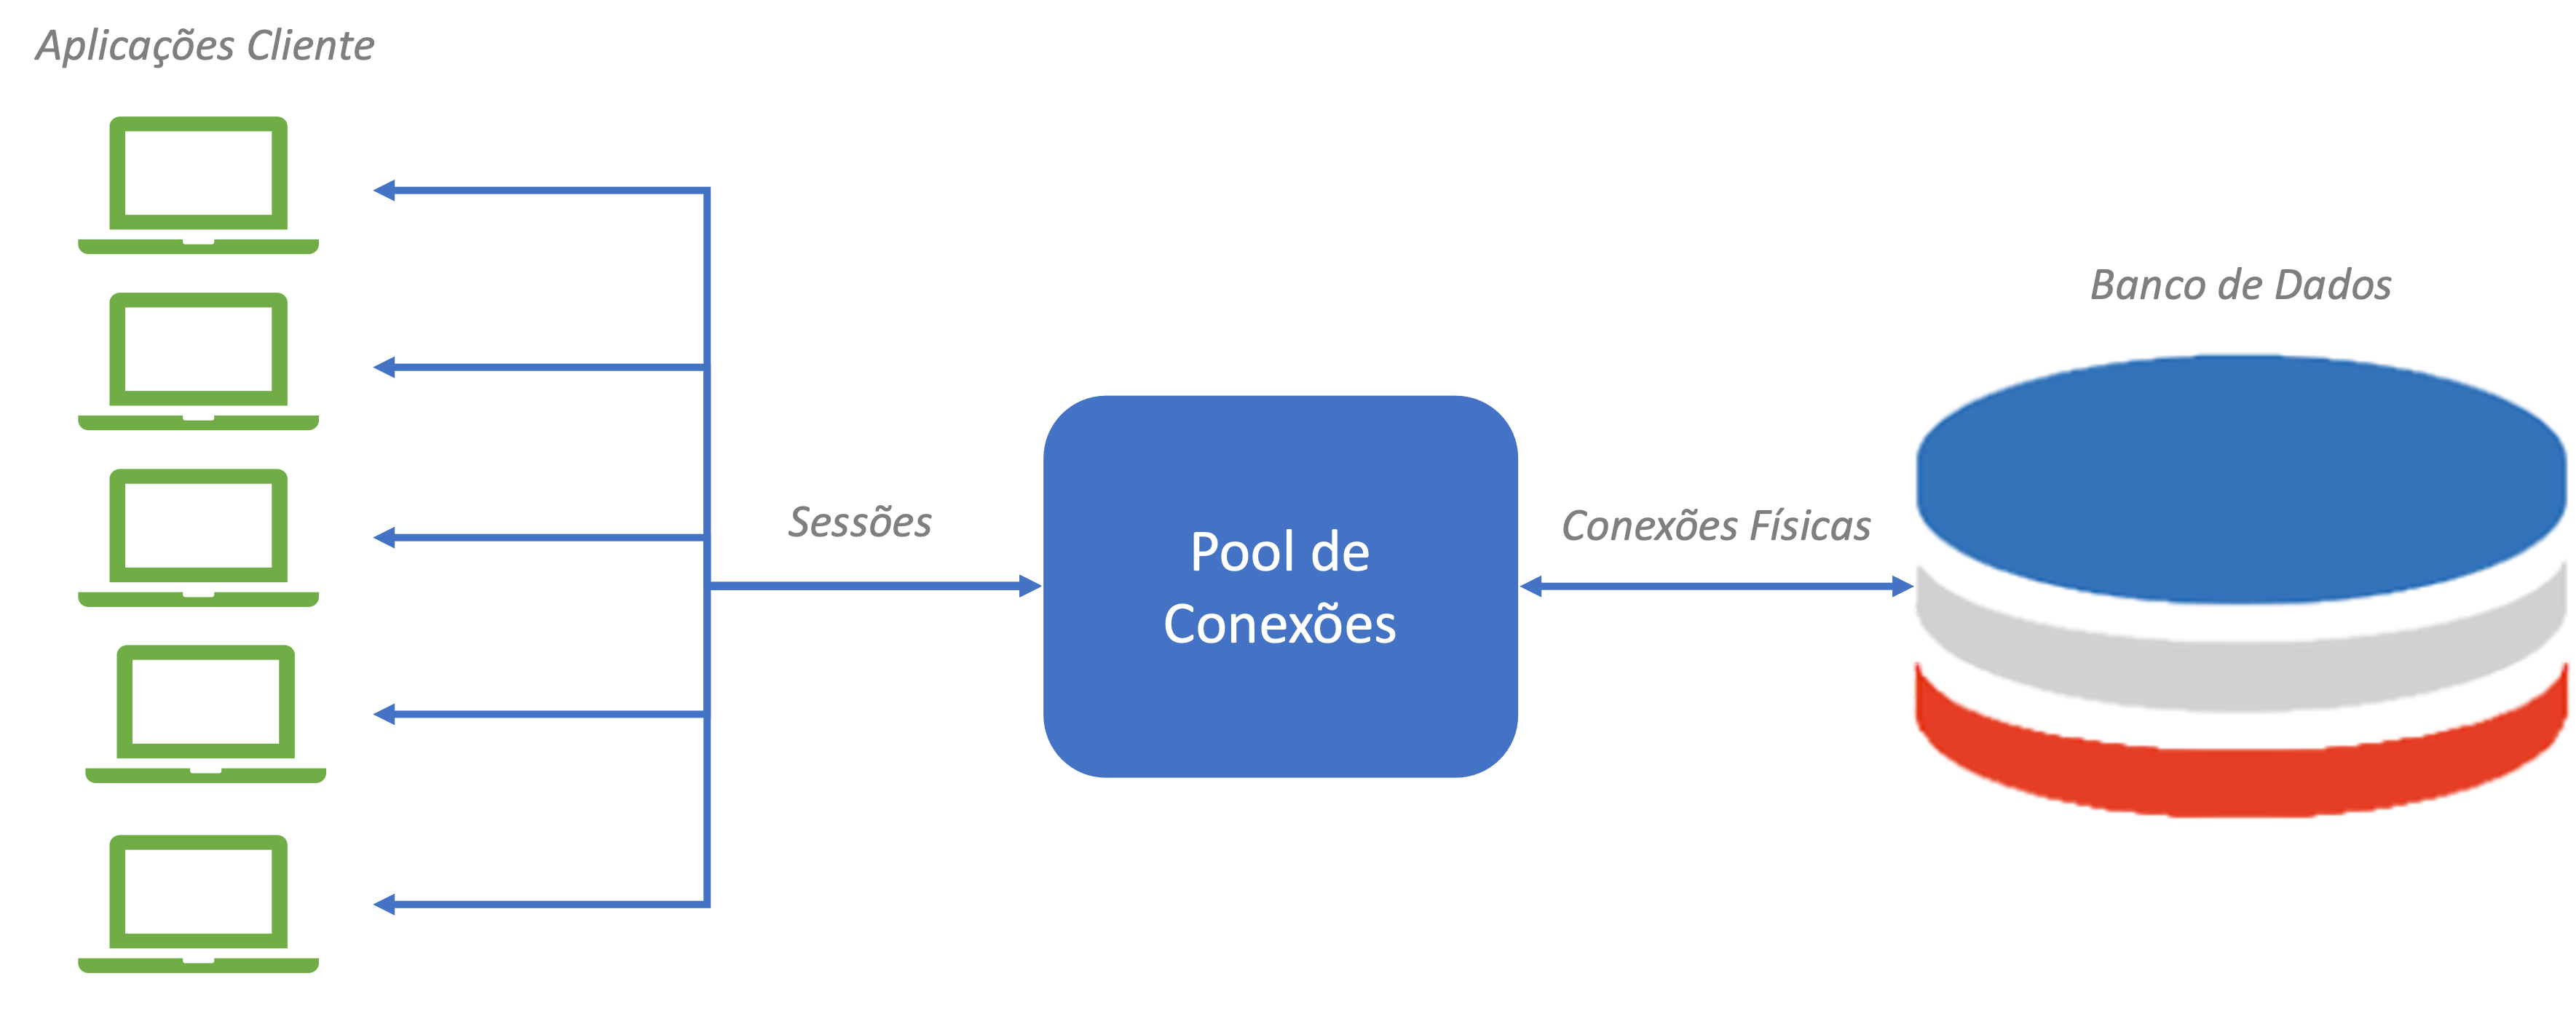 Pool de Conexões